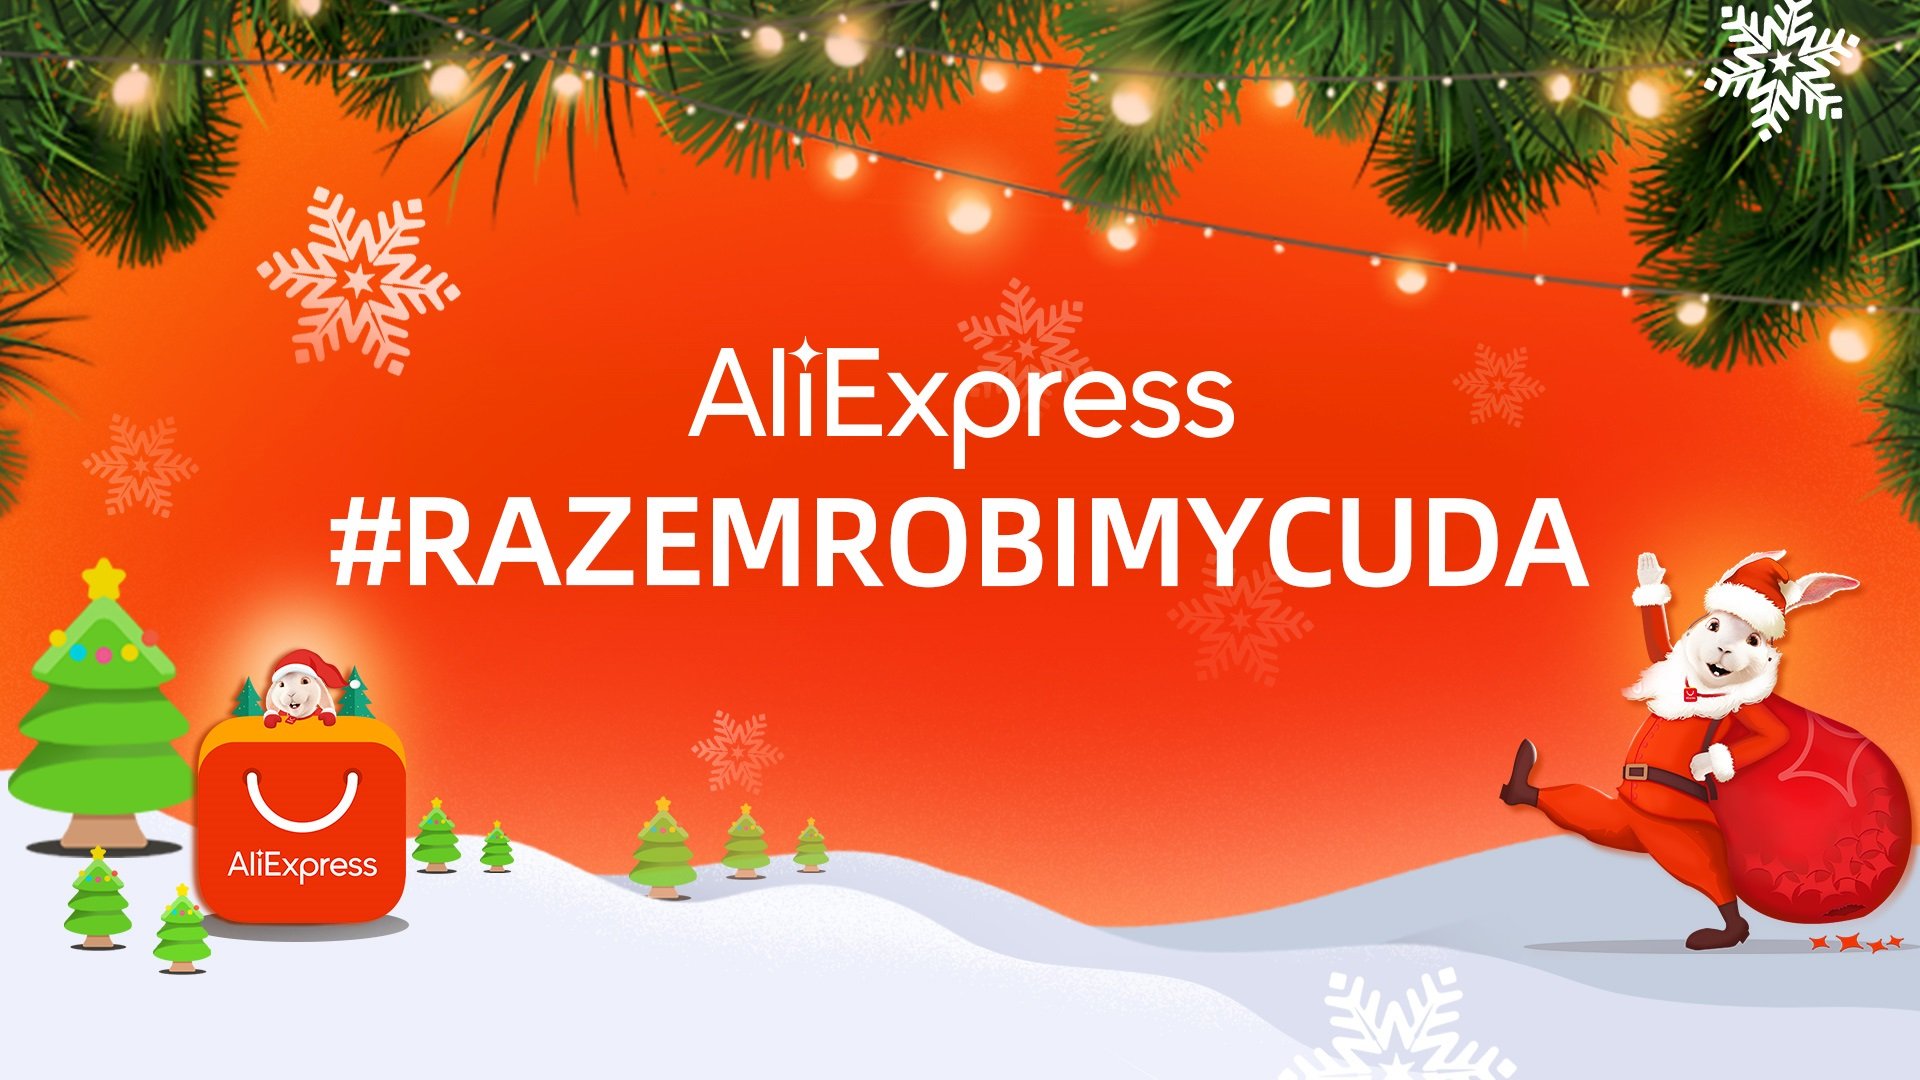 Świąteczna kampania charytatywna AliExpress #RazemRobimyCuda